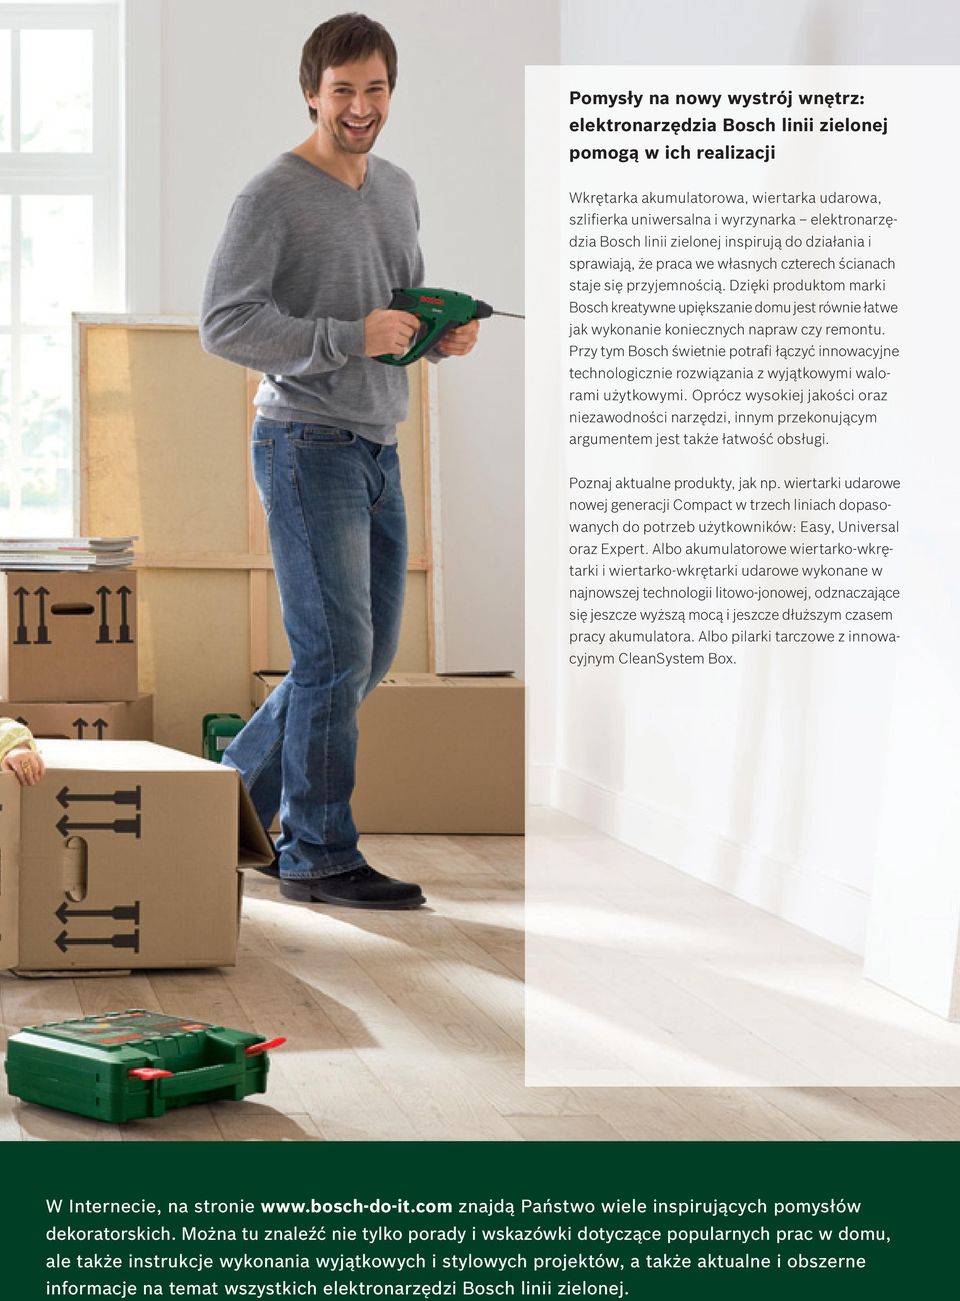 Dzięki produktom marki Bosch kreatywne upiększanie domu jest równie łatwe jak wykonanie koniecznych napraw czy remontu.